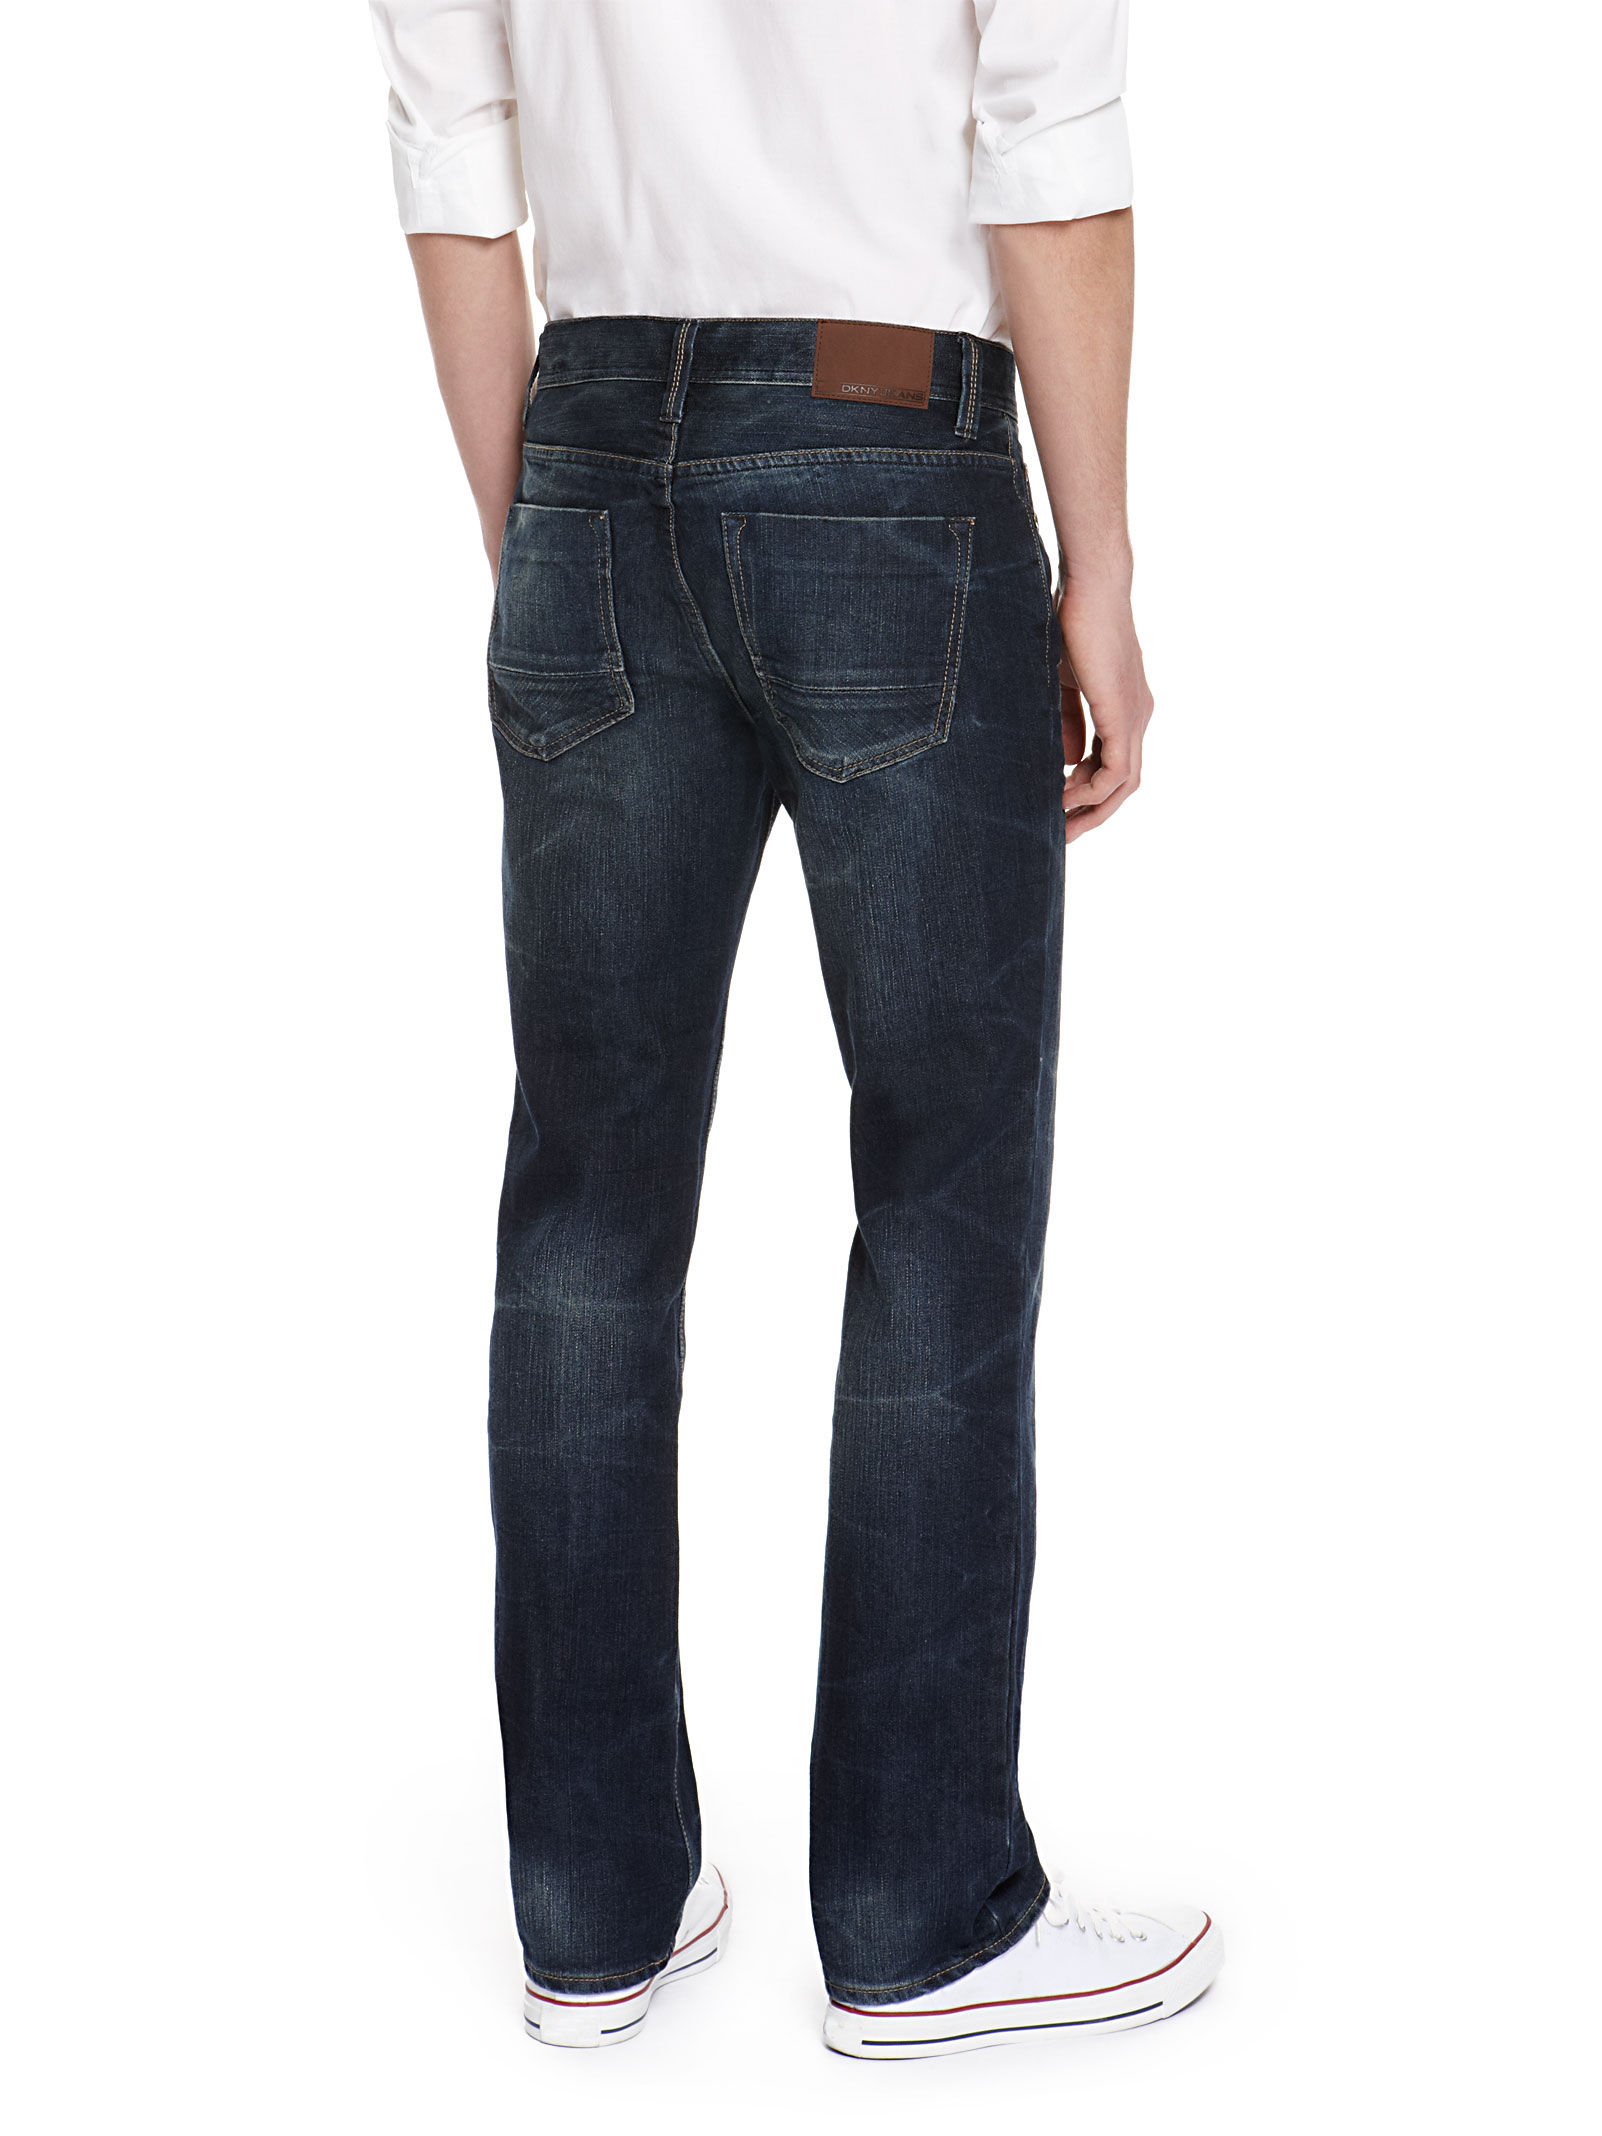 DKNY Jeans Soho 32